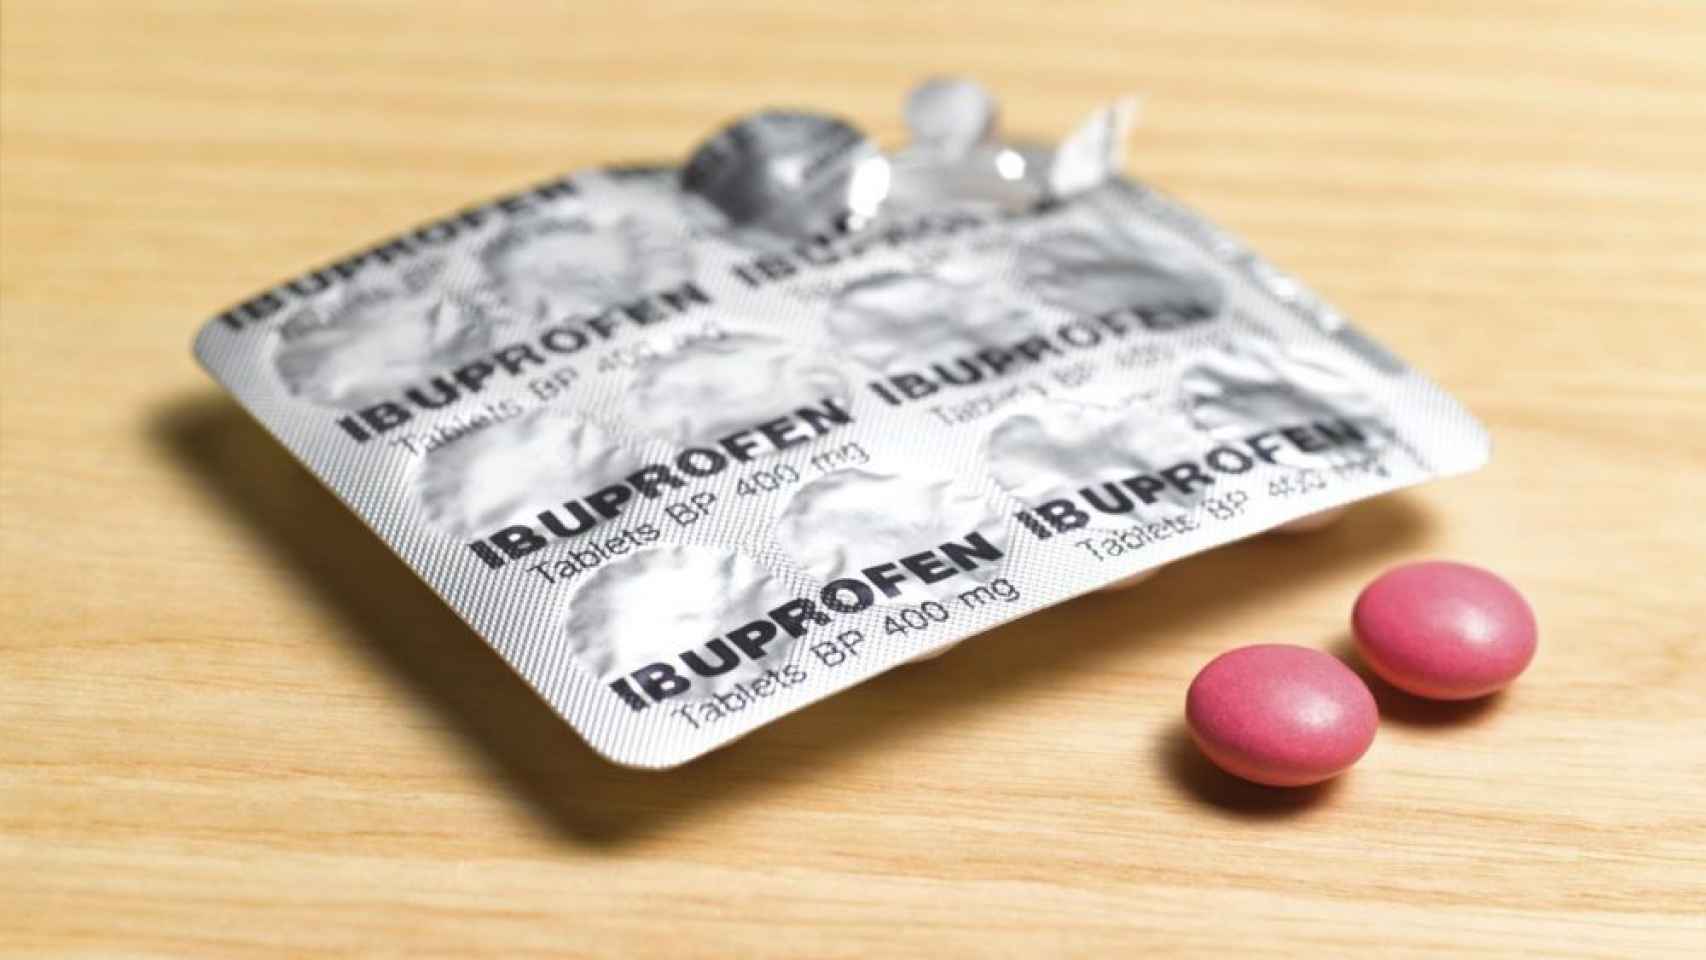 Un blister de ibuprofeno